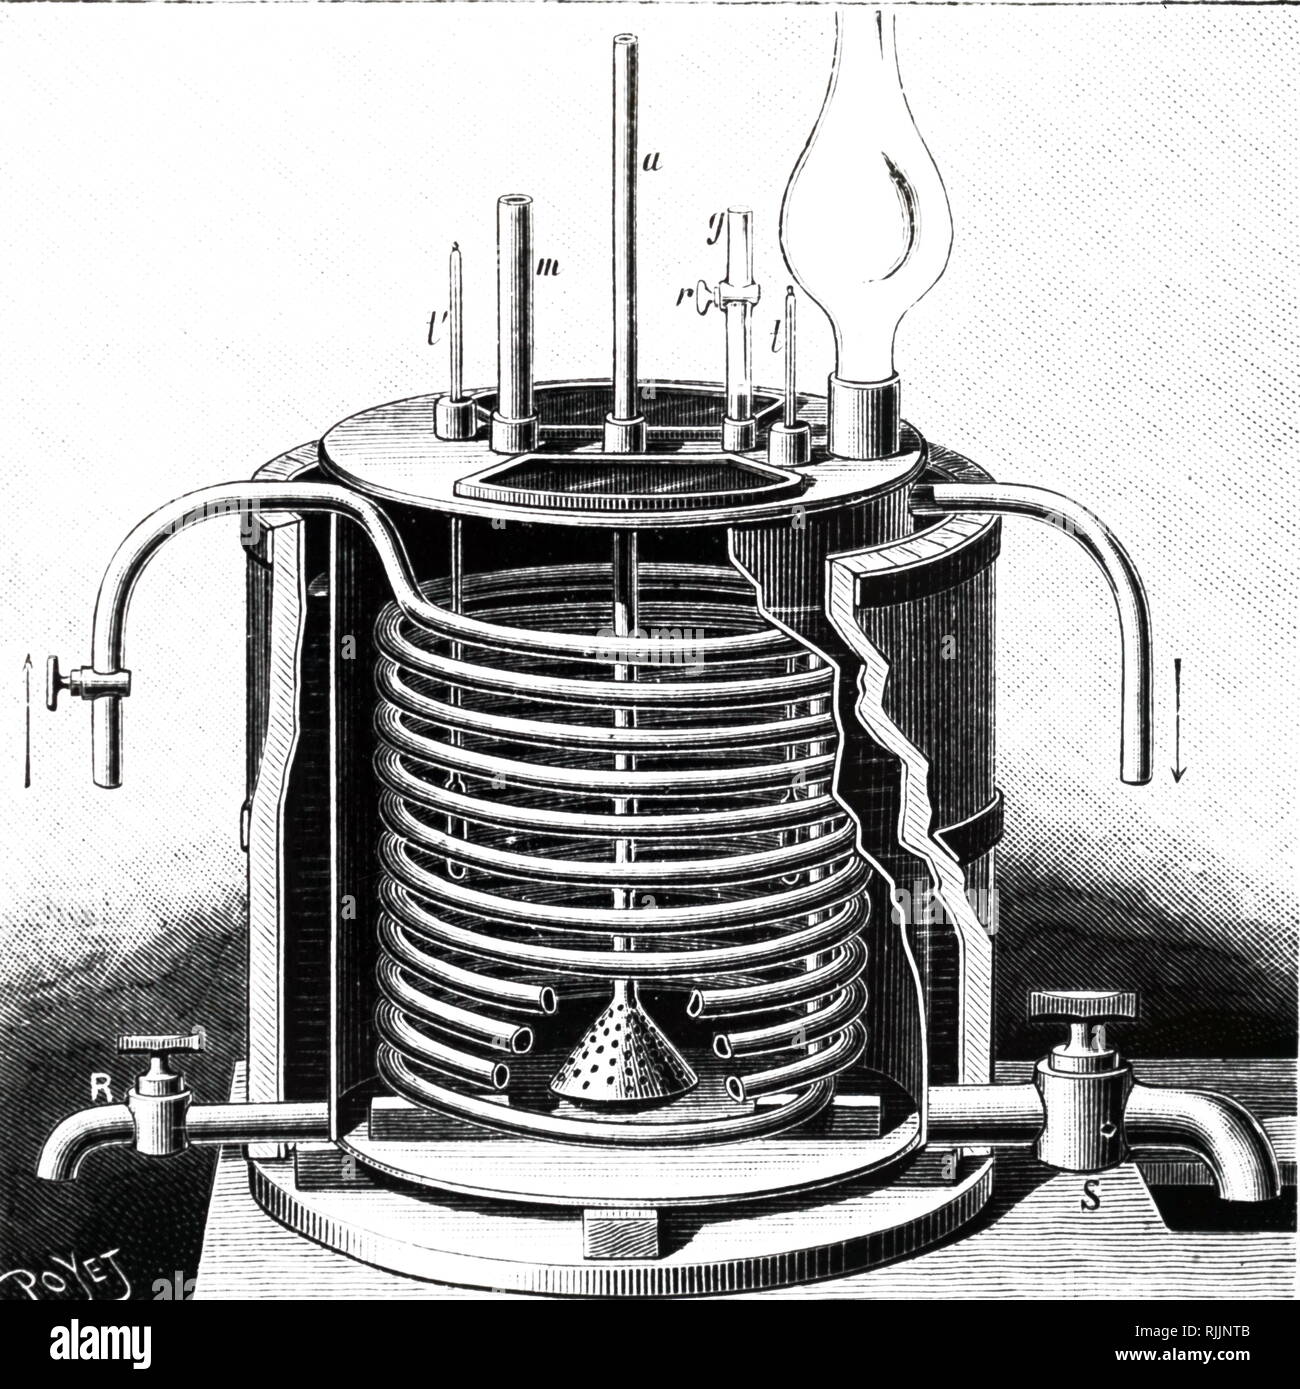 Una vista in sezione di un mitrator per la produzione commerciale di nitro-glicerina. Datata del XIX secolo Foto Stock